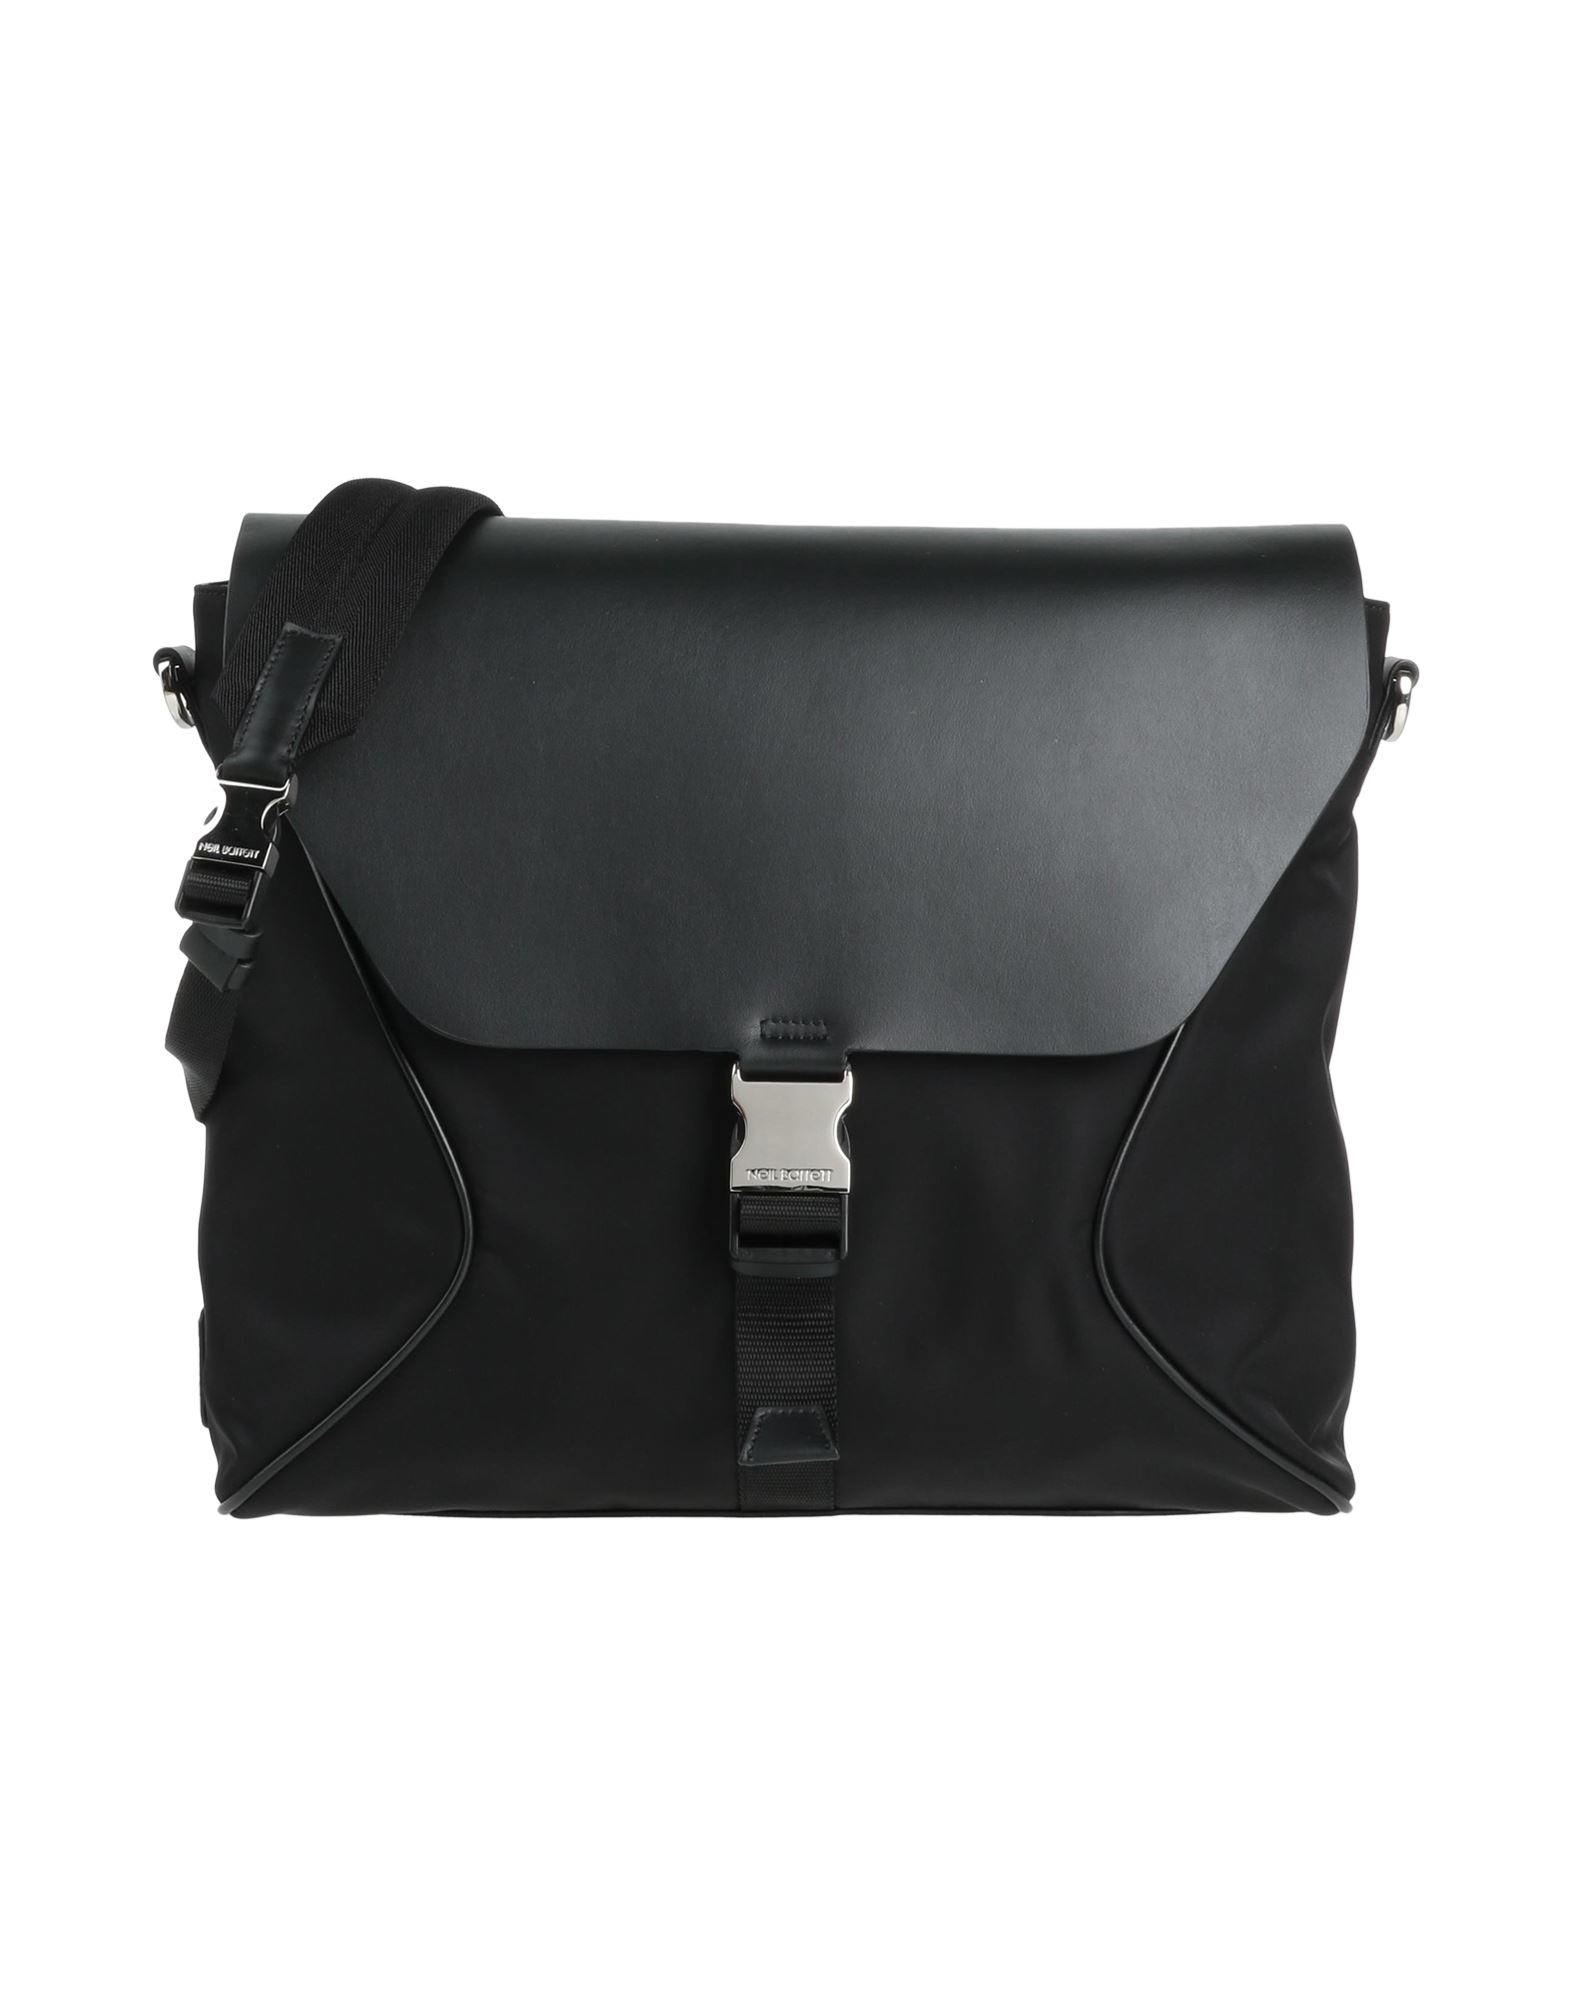 Neil Barrett Handbags In Black